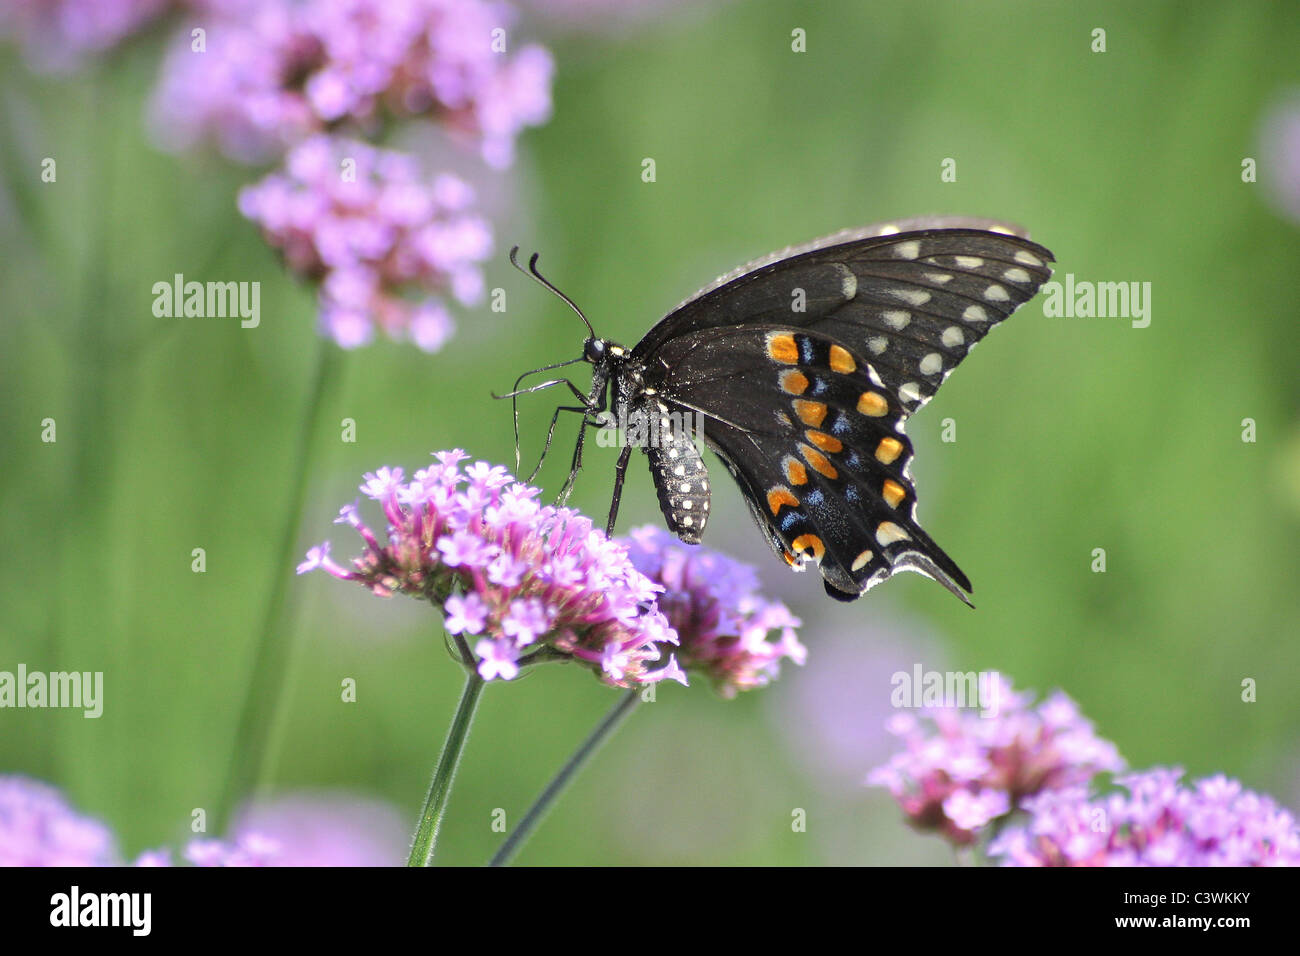 Un papillon au galop sur fond vert, le Swallowtail noir brésilien sur la Verveine Fleurs, Papilio polyxenes Fabriciu Banque D'Images